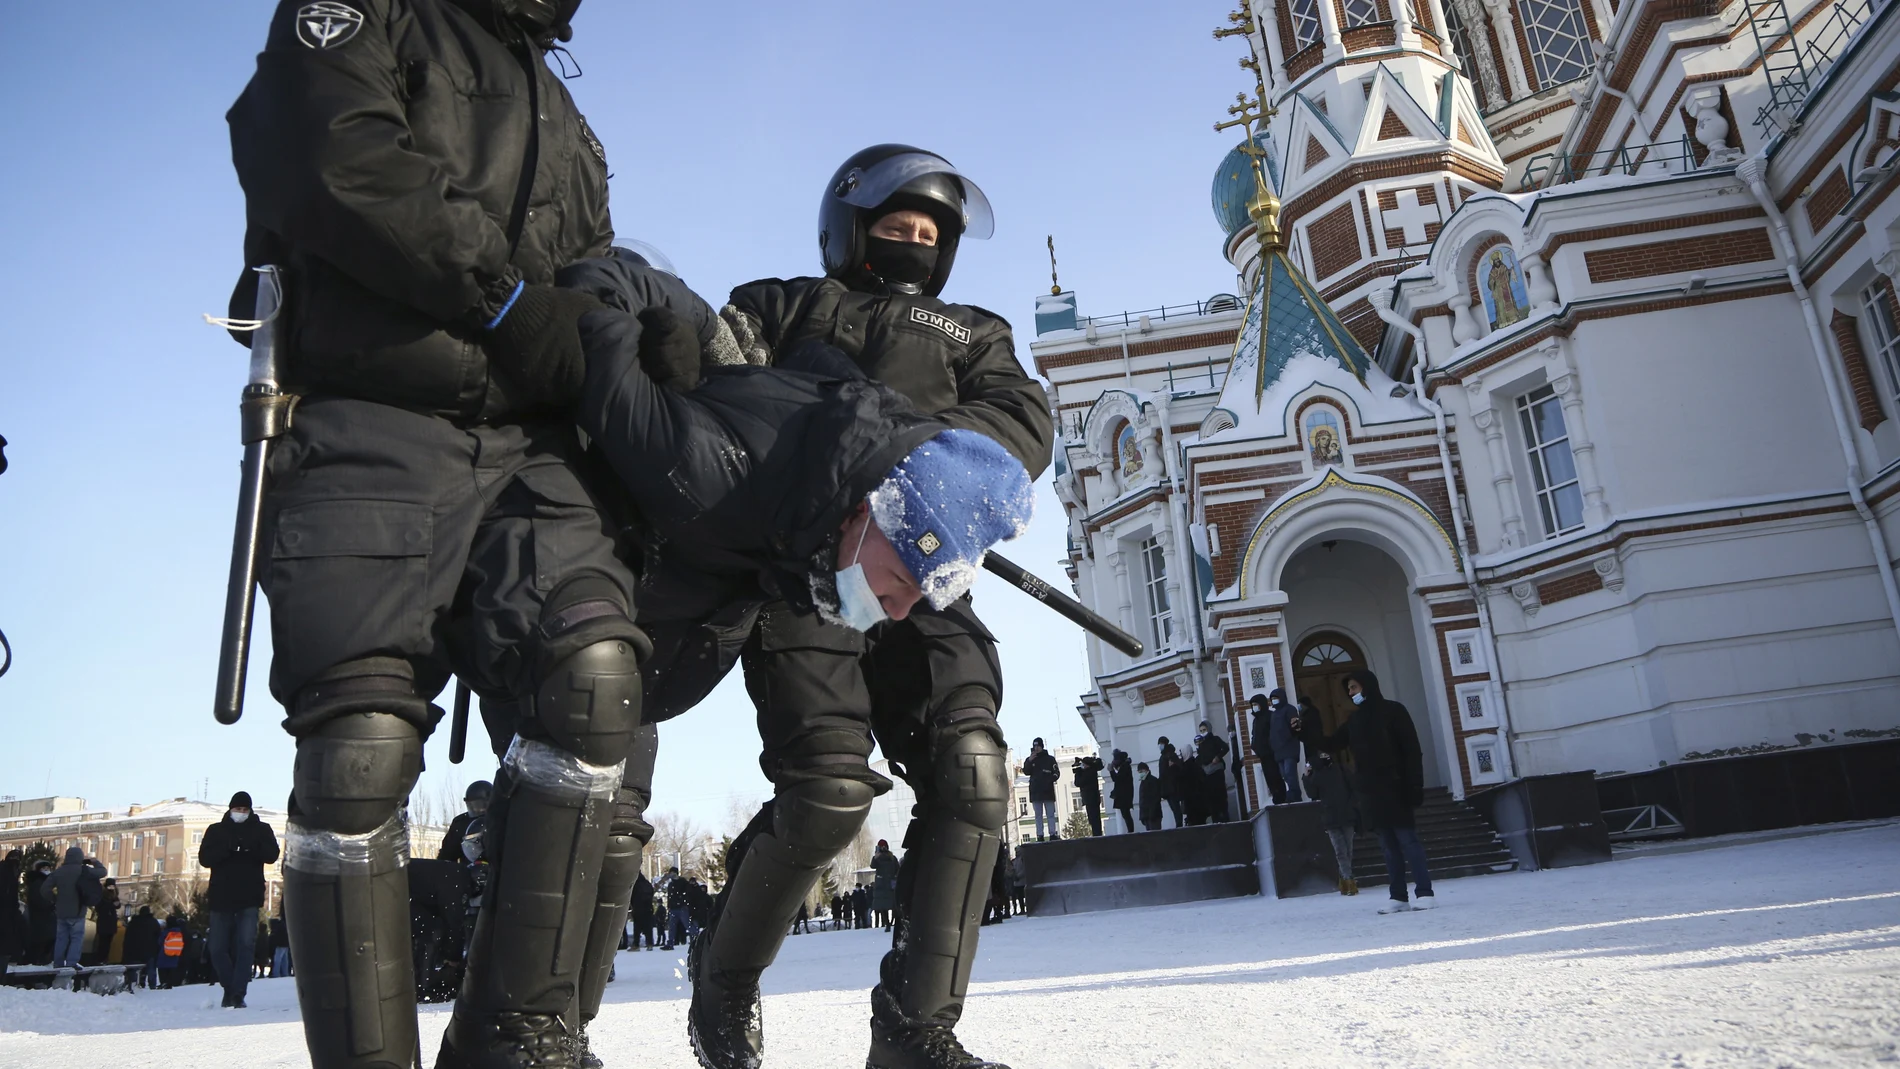 La Policía detiene a un hombre en la ciudad siberiana de Omsk. Hoy se han convocado manifestaciones en apoyo al líder opositor ruso encarcelado Alexei Navalni